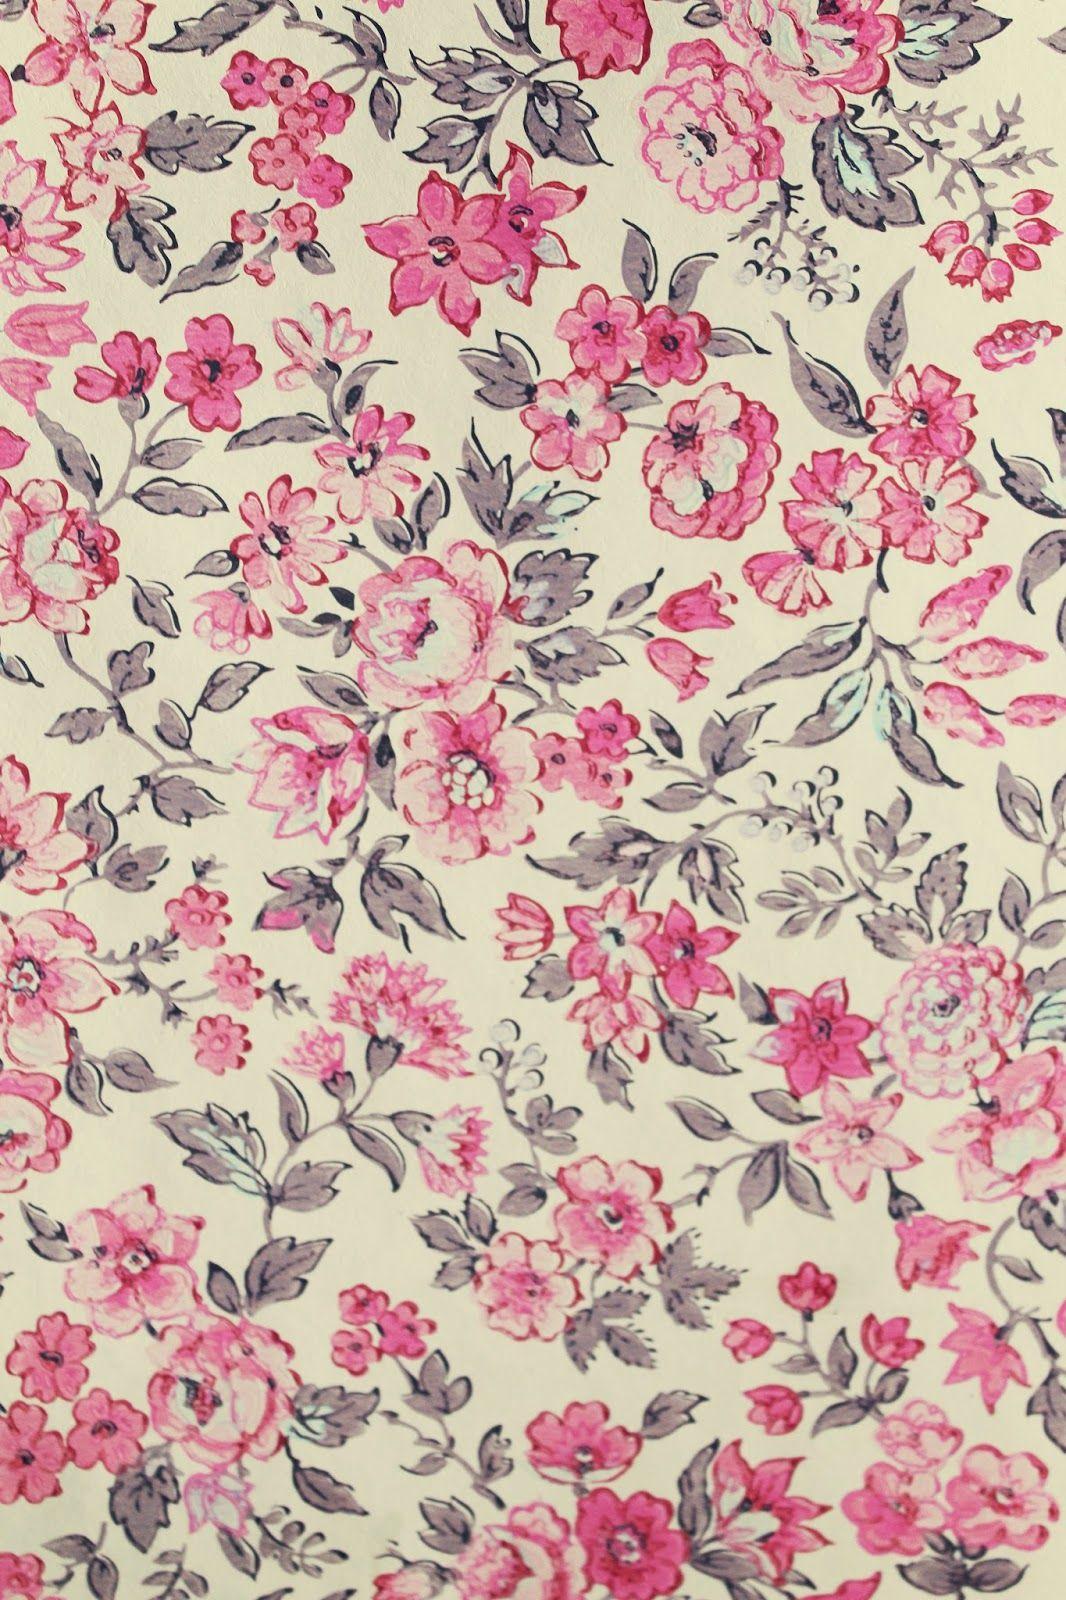 Vintage Floral Wallpapers - Top Free Vintage Floral Backgrounds